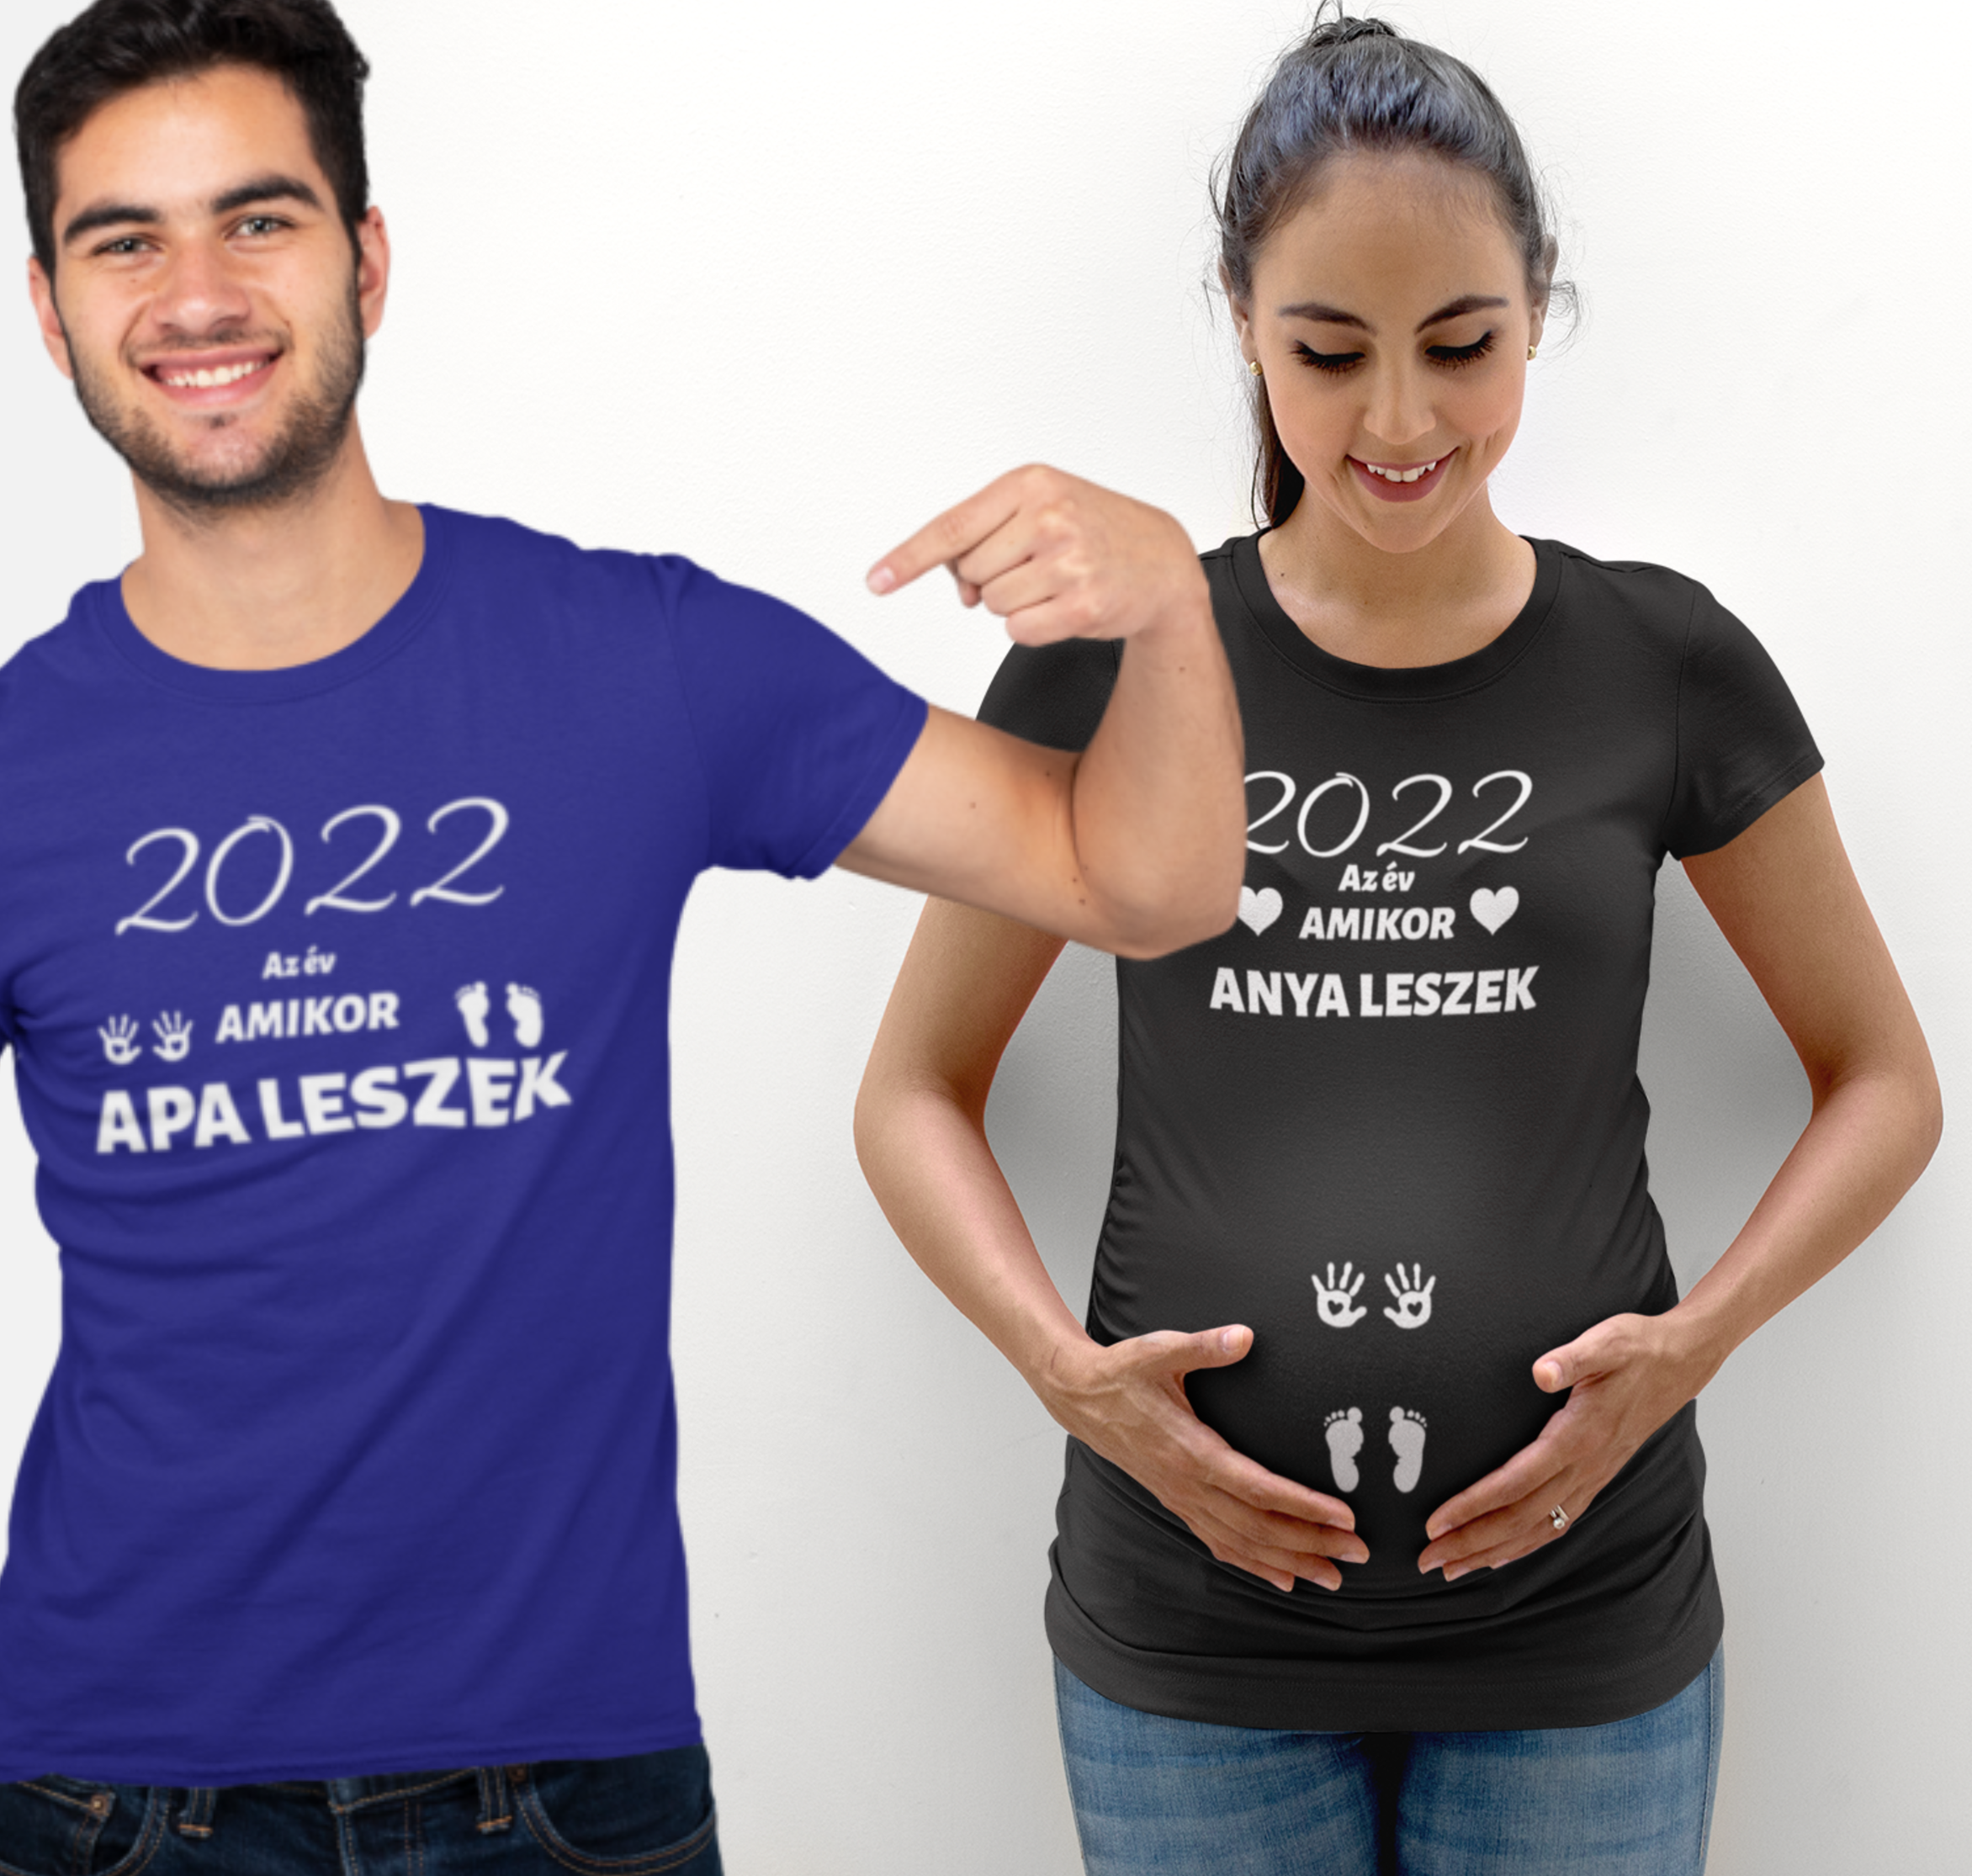 2022 az év amikor anya leszek/ 2022 az év amikor apa leszek (f,k)(2 db póló)